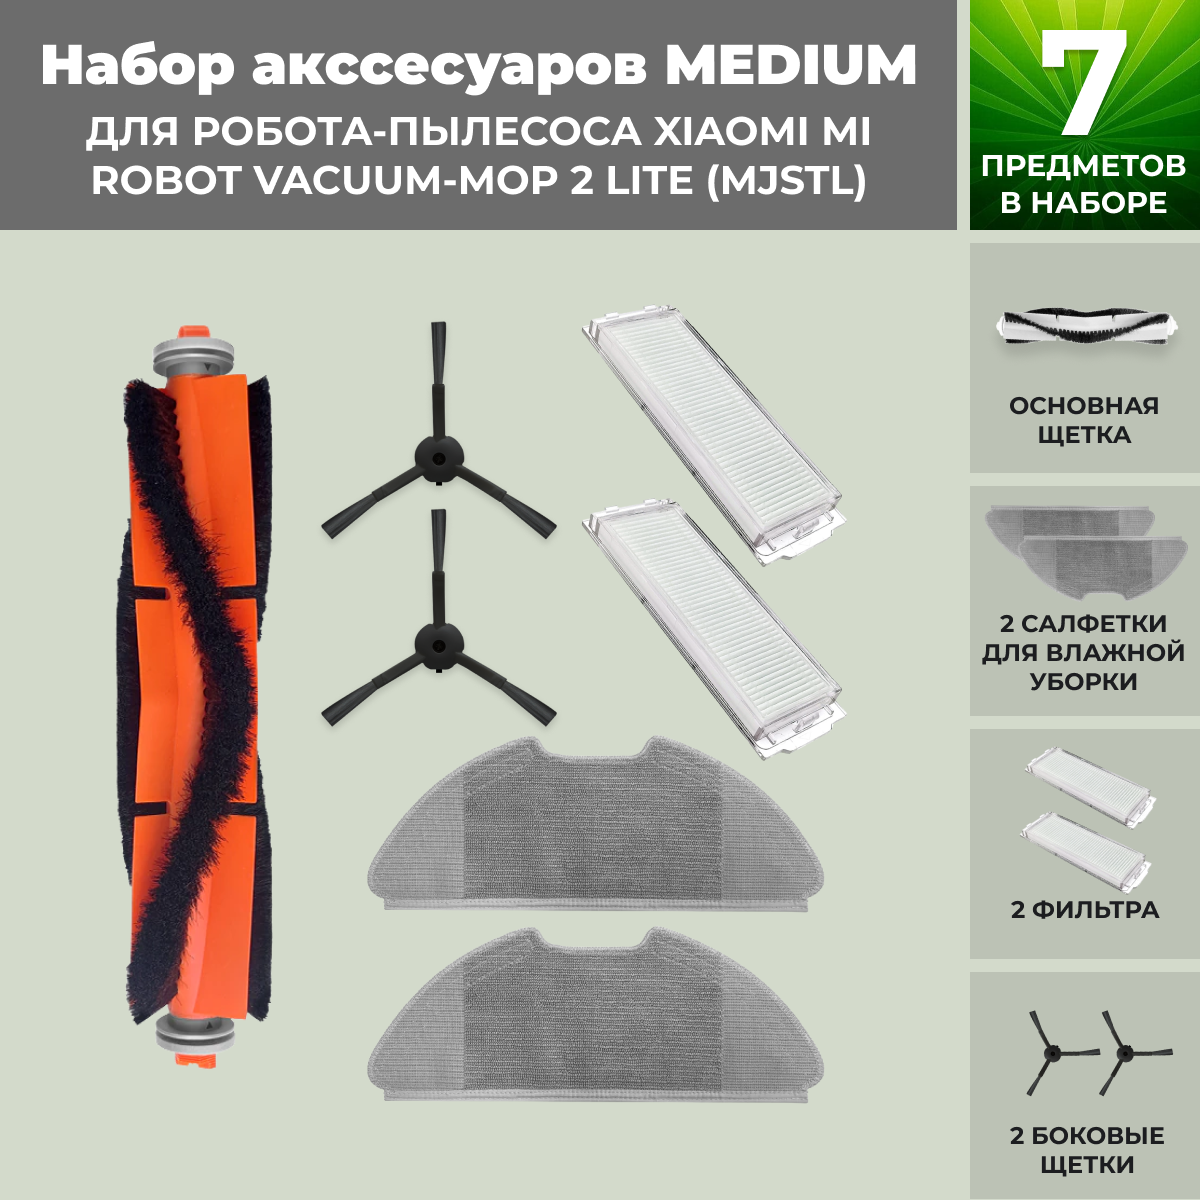 Набор аксессуаров Medium для робота-пылесоса Xiaomi Mi Robot Vacuum-Mop 2 Lite (MJSTL), черные боковые щетки